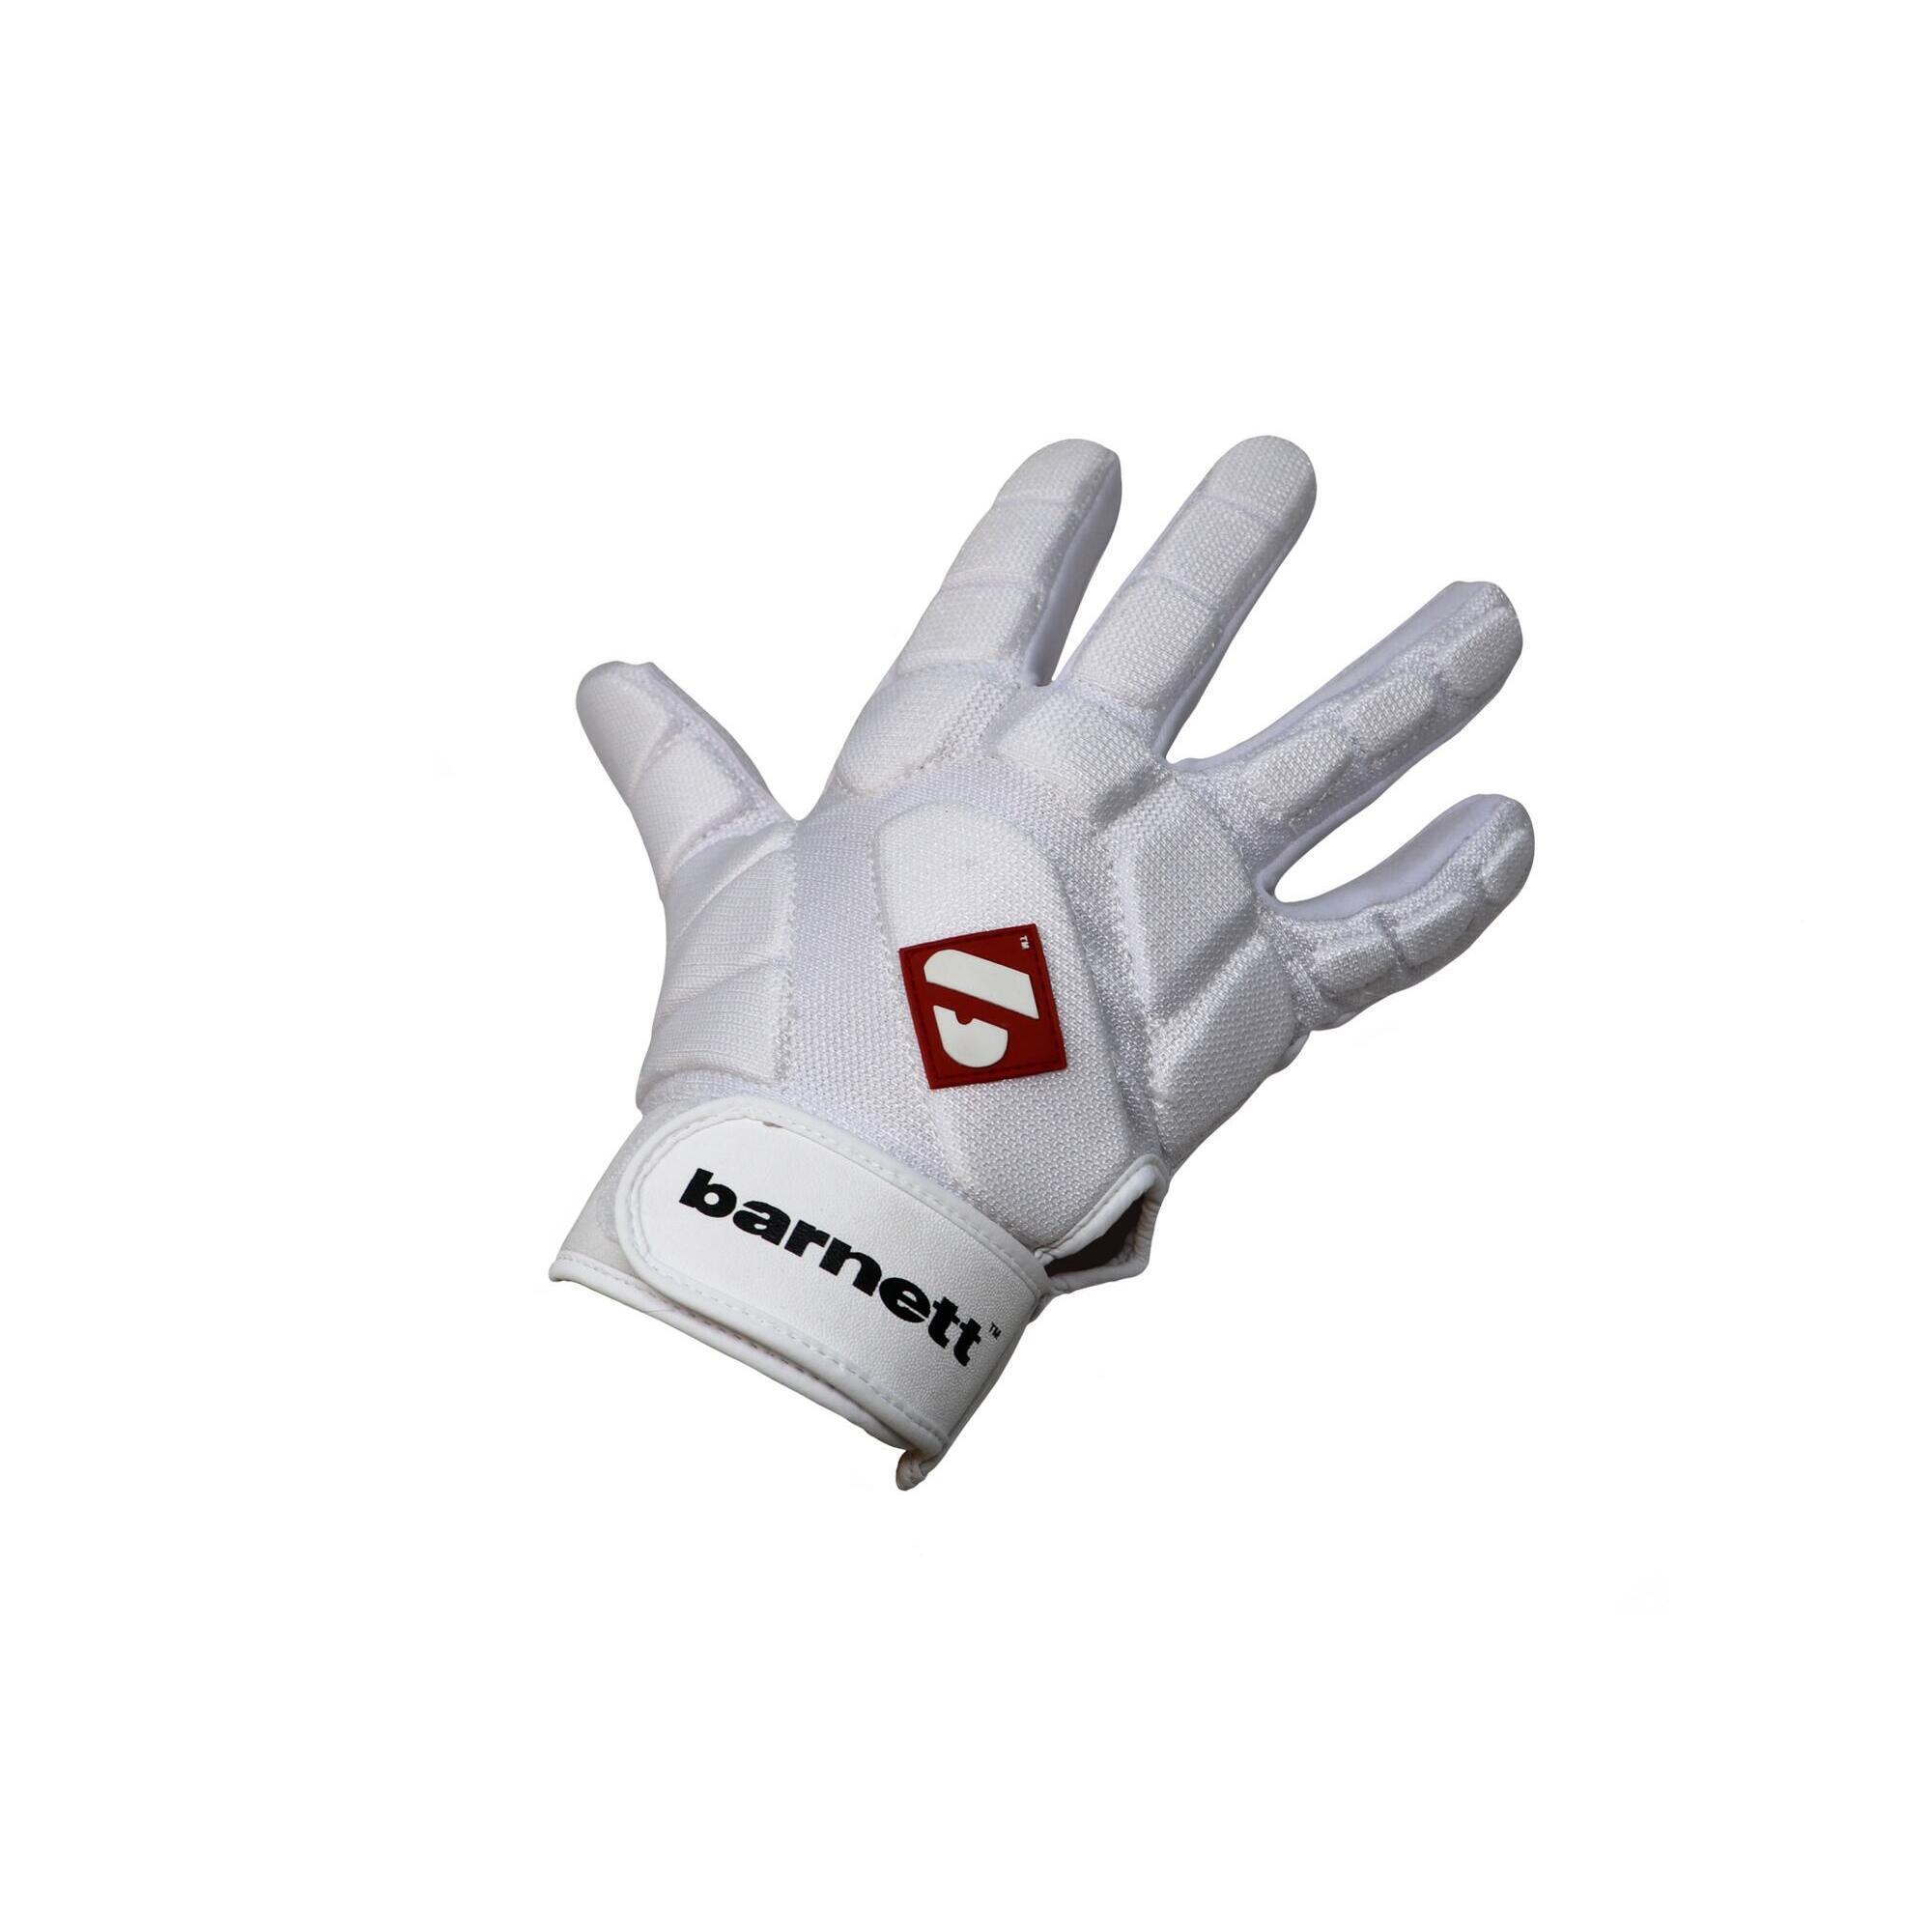  pro linebacker american football gloves, LB,RB,TE White FKG-03 2/4